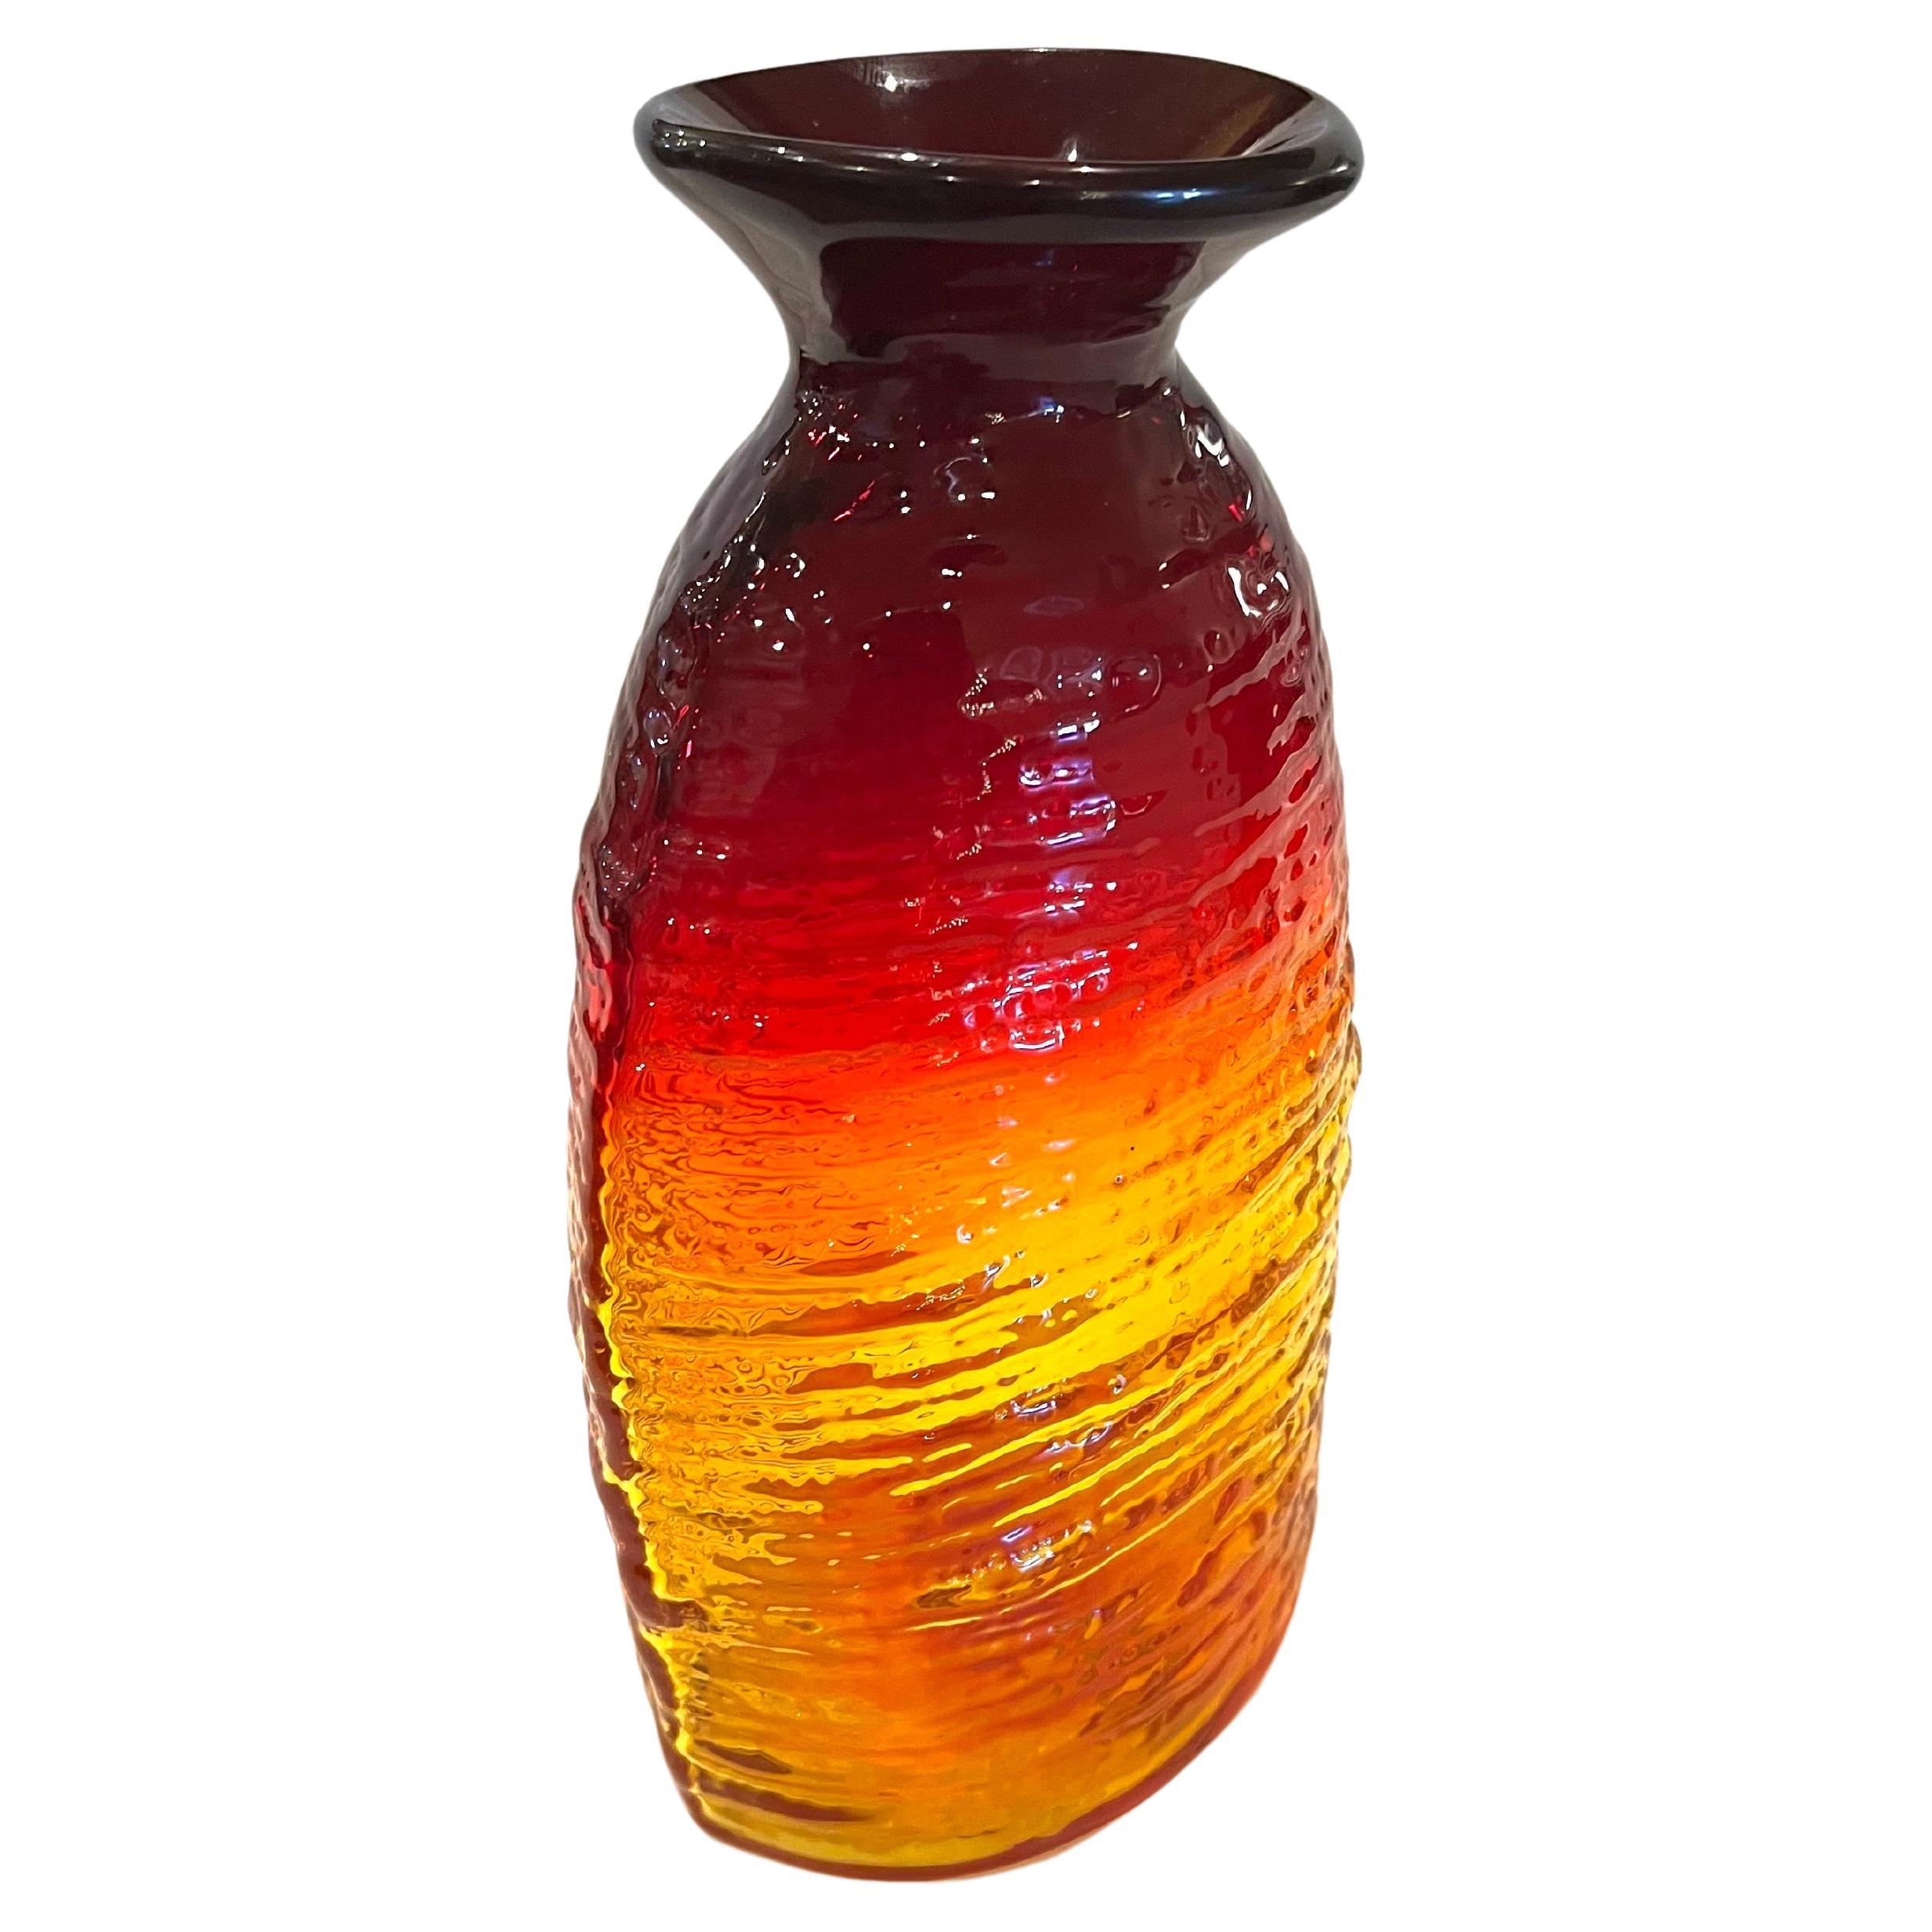 Magnifiques couleurs sur ce grand vase en verre amberina de Blenko, circa 2005, conserve l'étiquette et la date et le logo en relief dans le verre, excellent état.